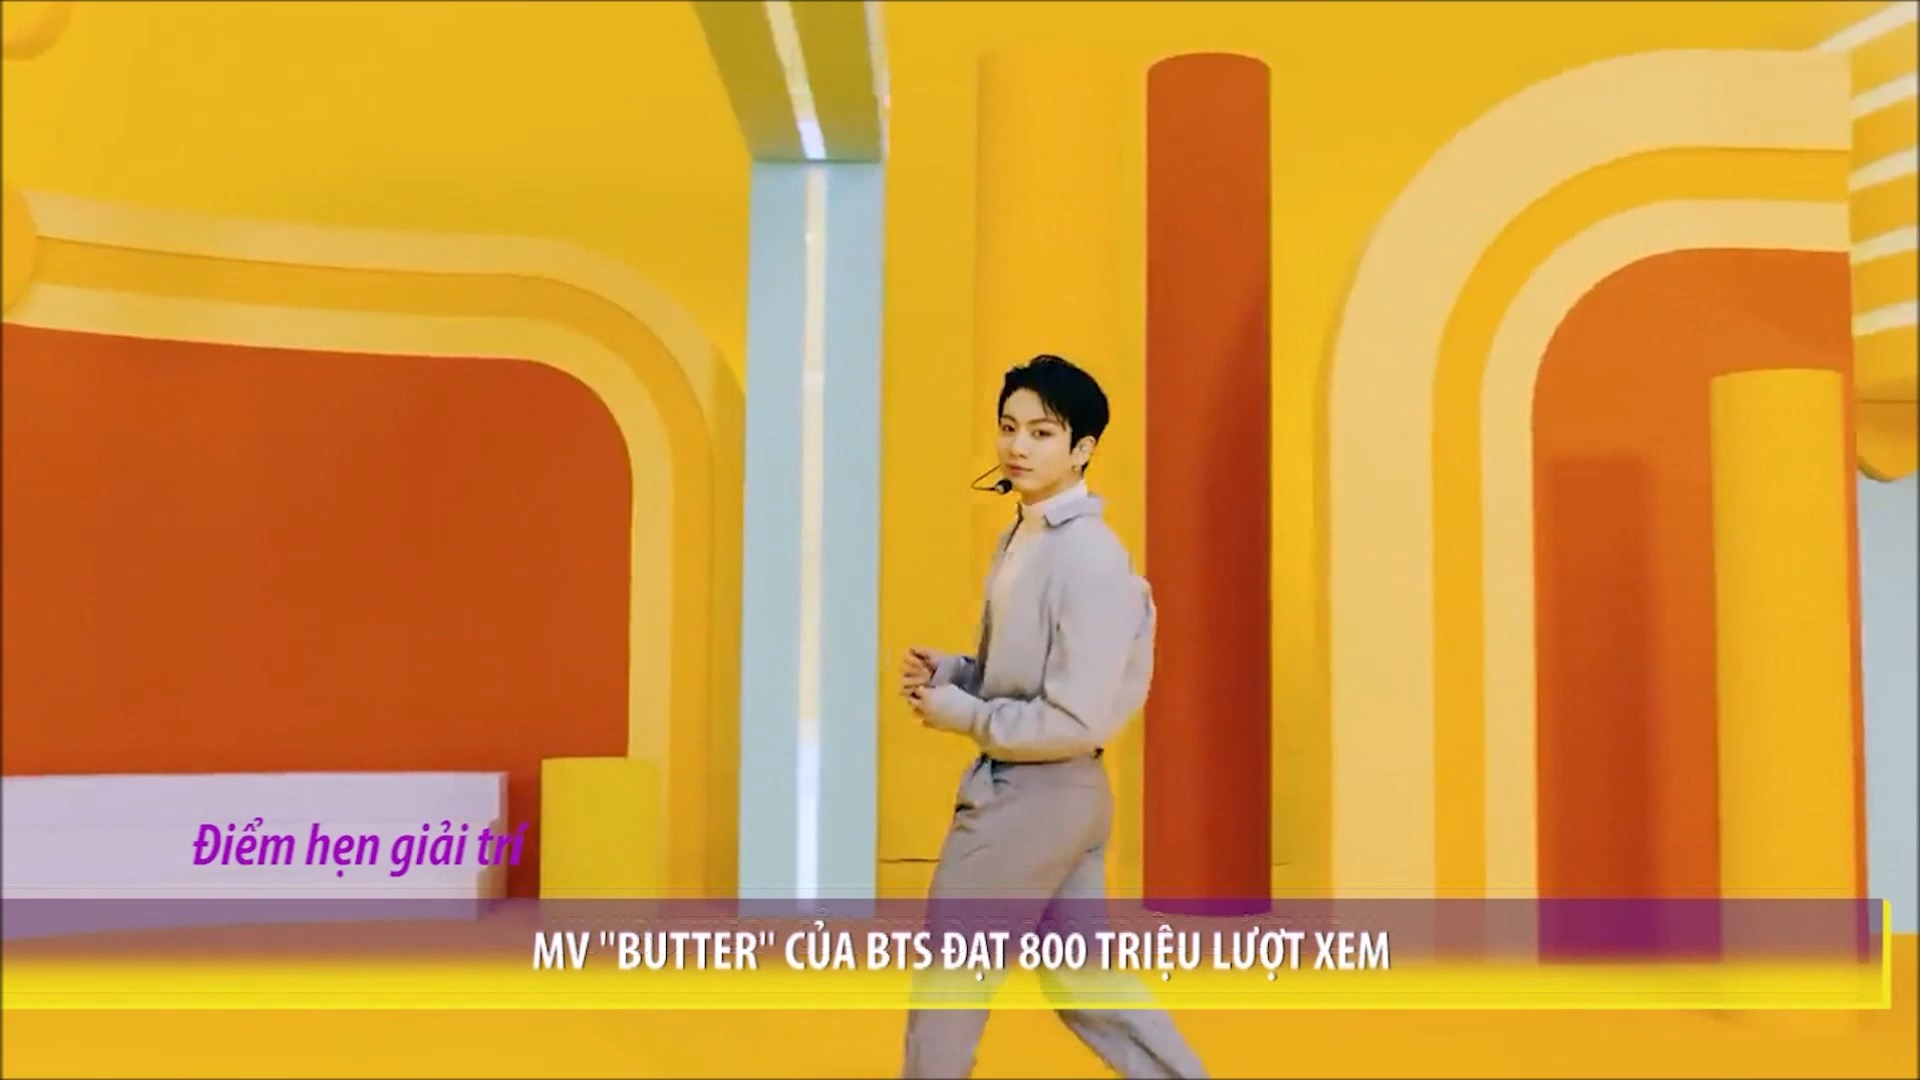 MV “Butter” của BTS đạt 800 triệu lượt xem